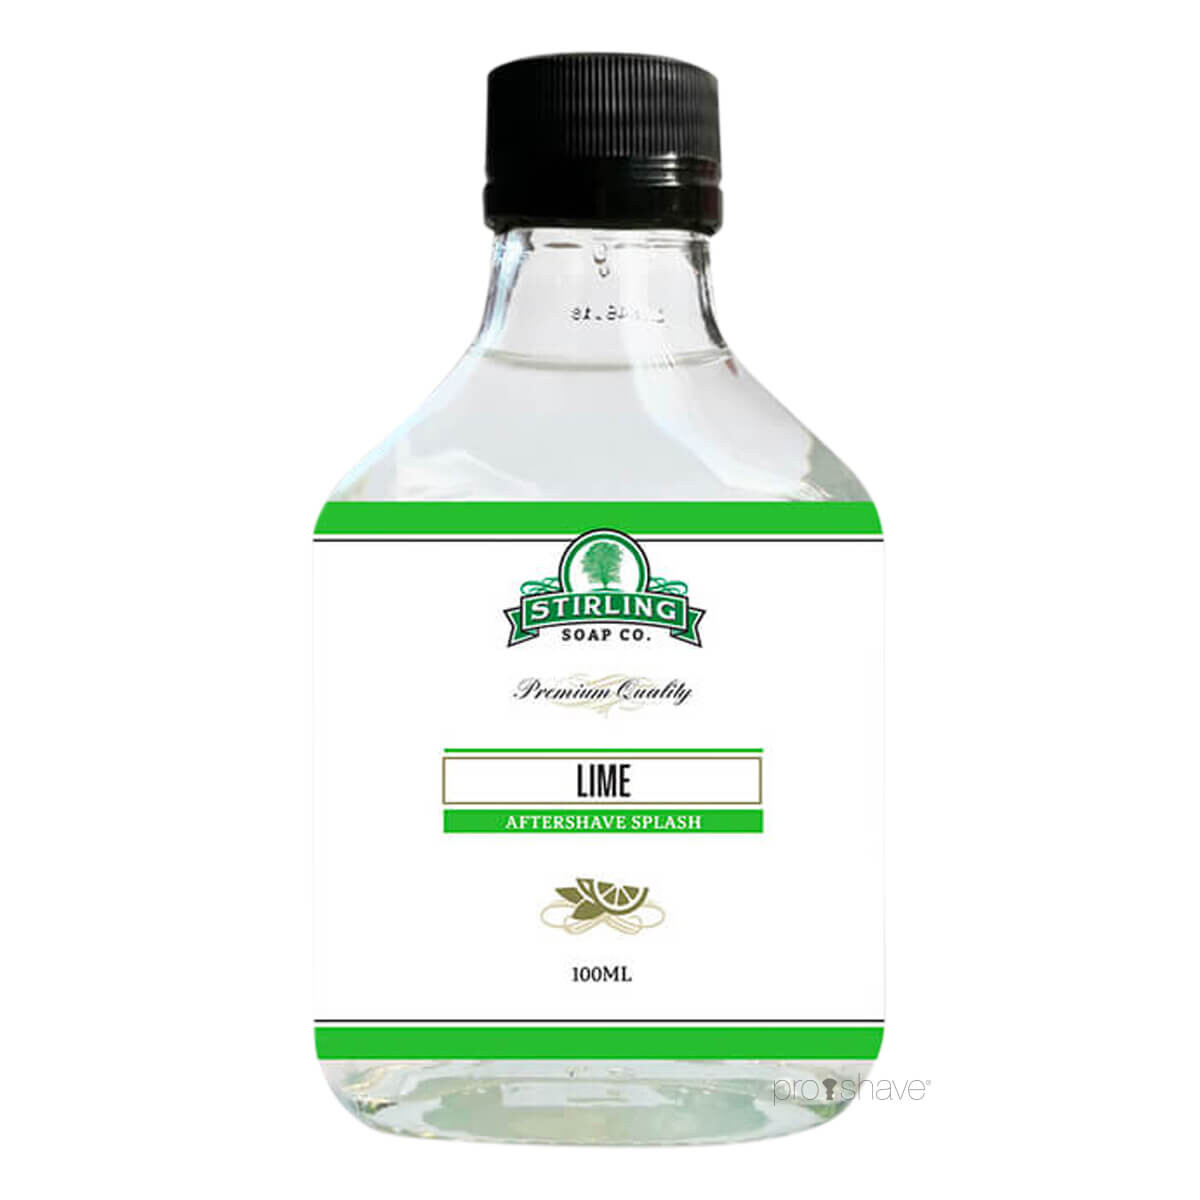 Stirling Soap Co. Aftershave Splash, Lime, 100 ml.